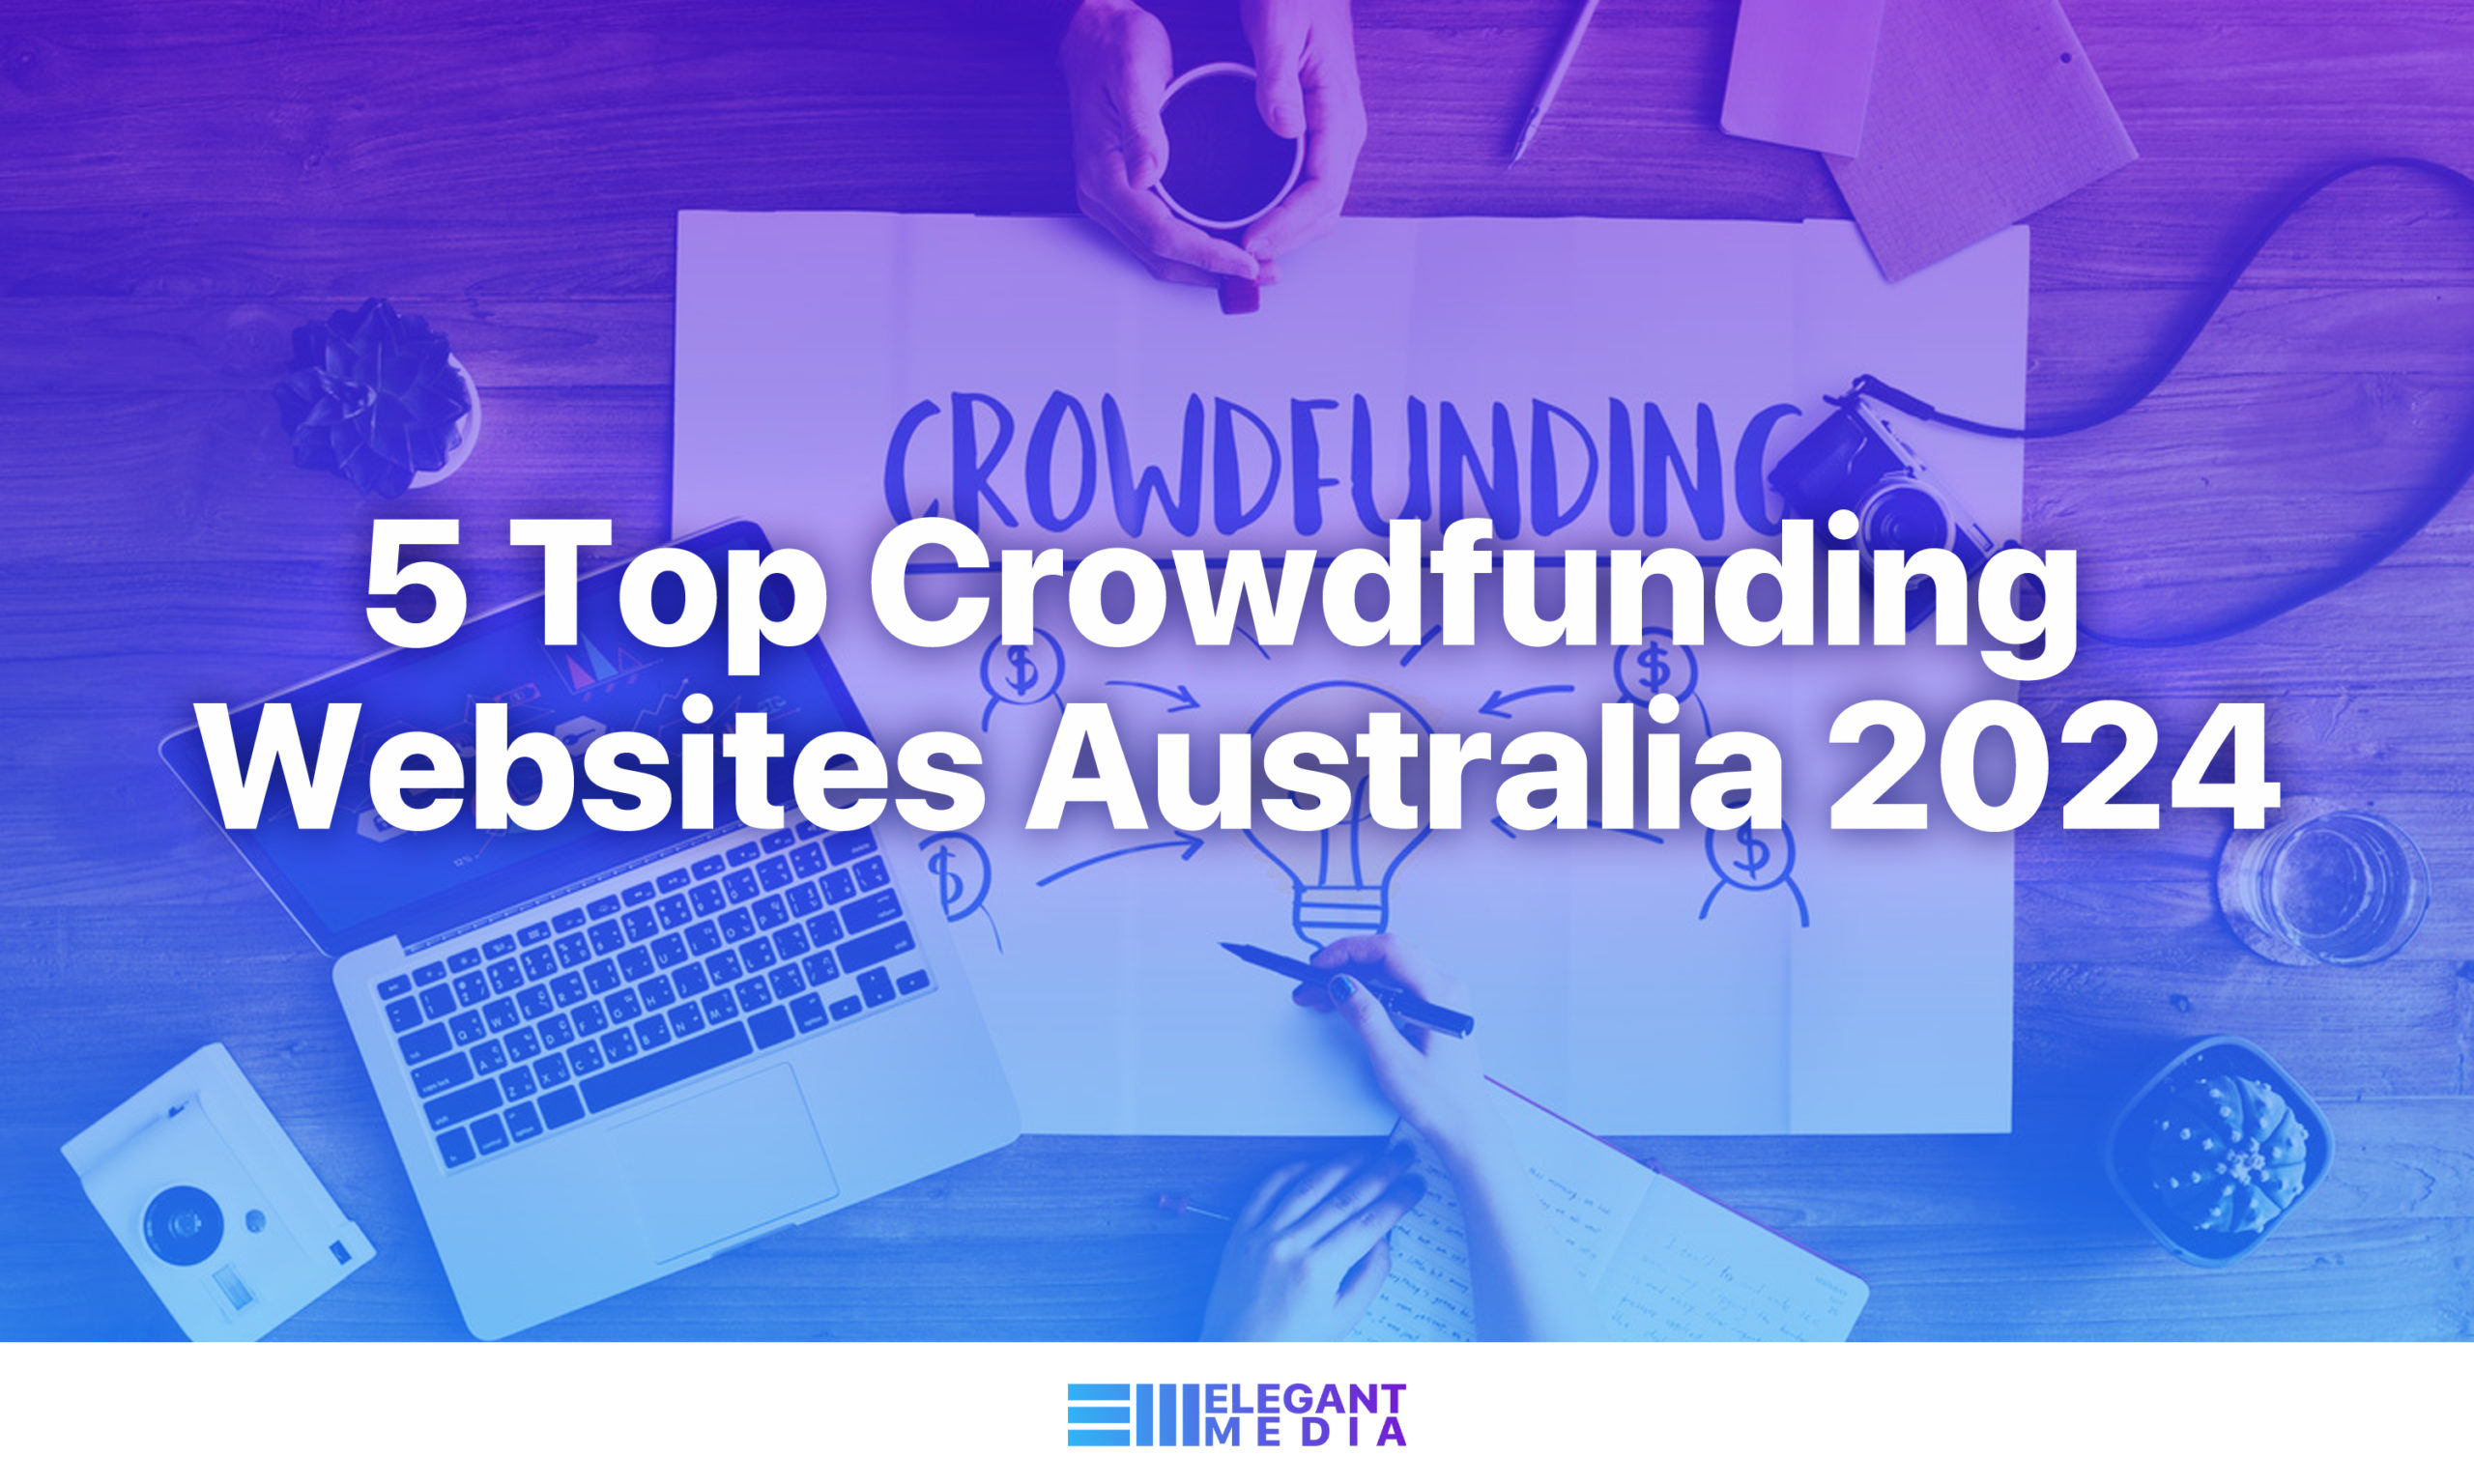 5 Top Crowdfunding Websites Australia 2024